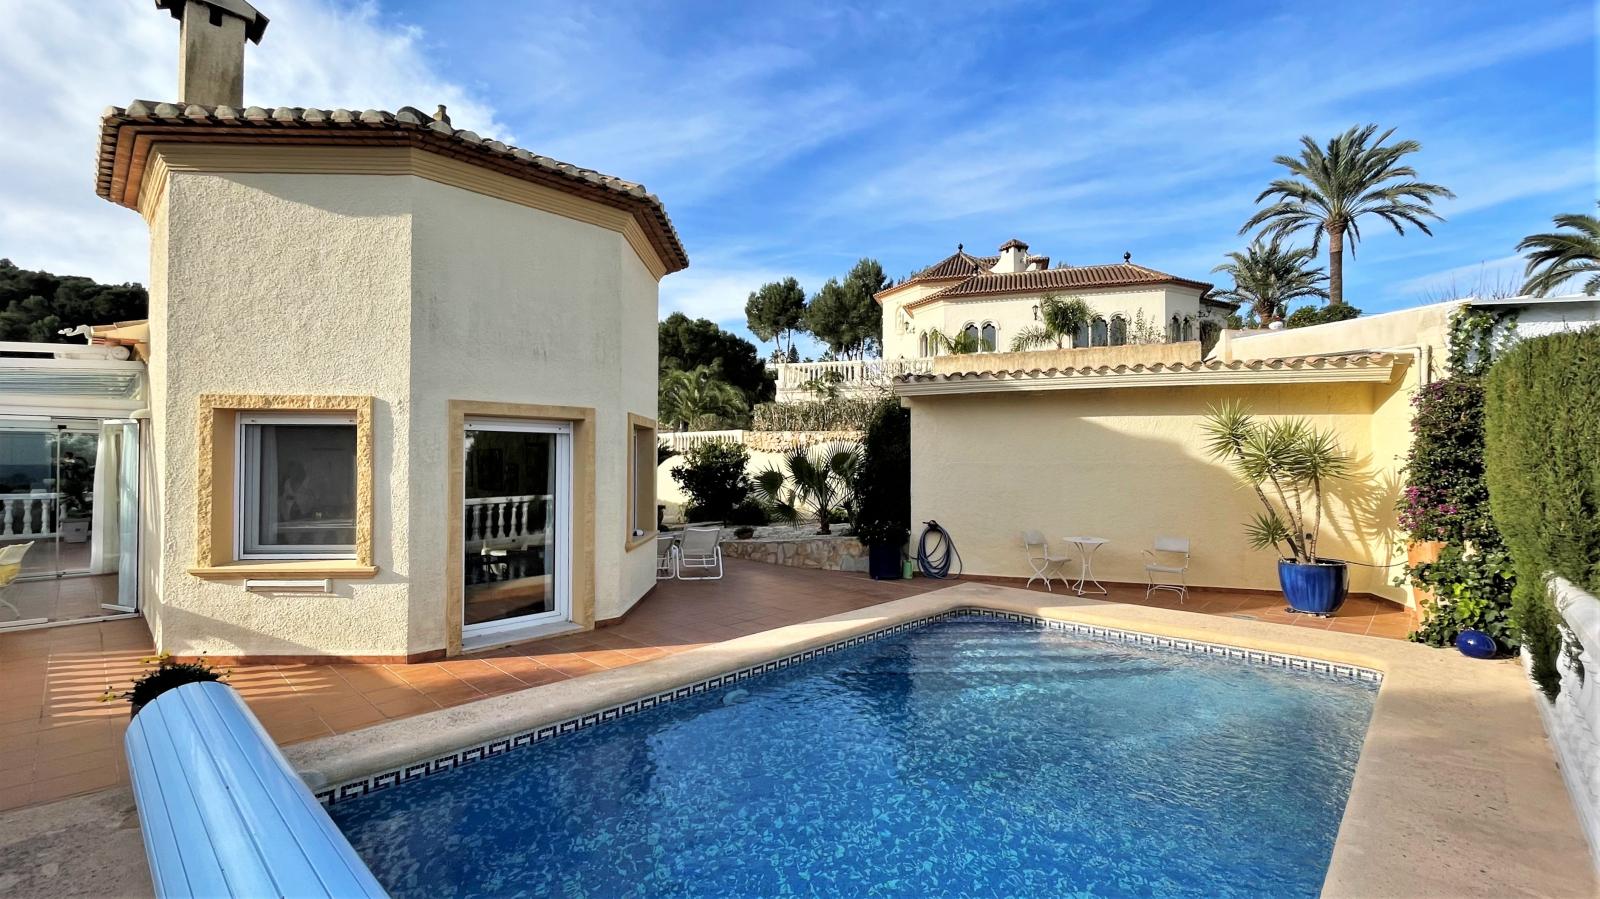 Magnifique villa avec vue sur la mer dans un endroit privilégié, avec chauffage au sol, piscine, carport, jardin d'hiver et bien plus encore !